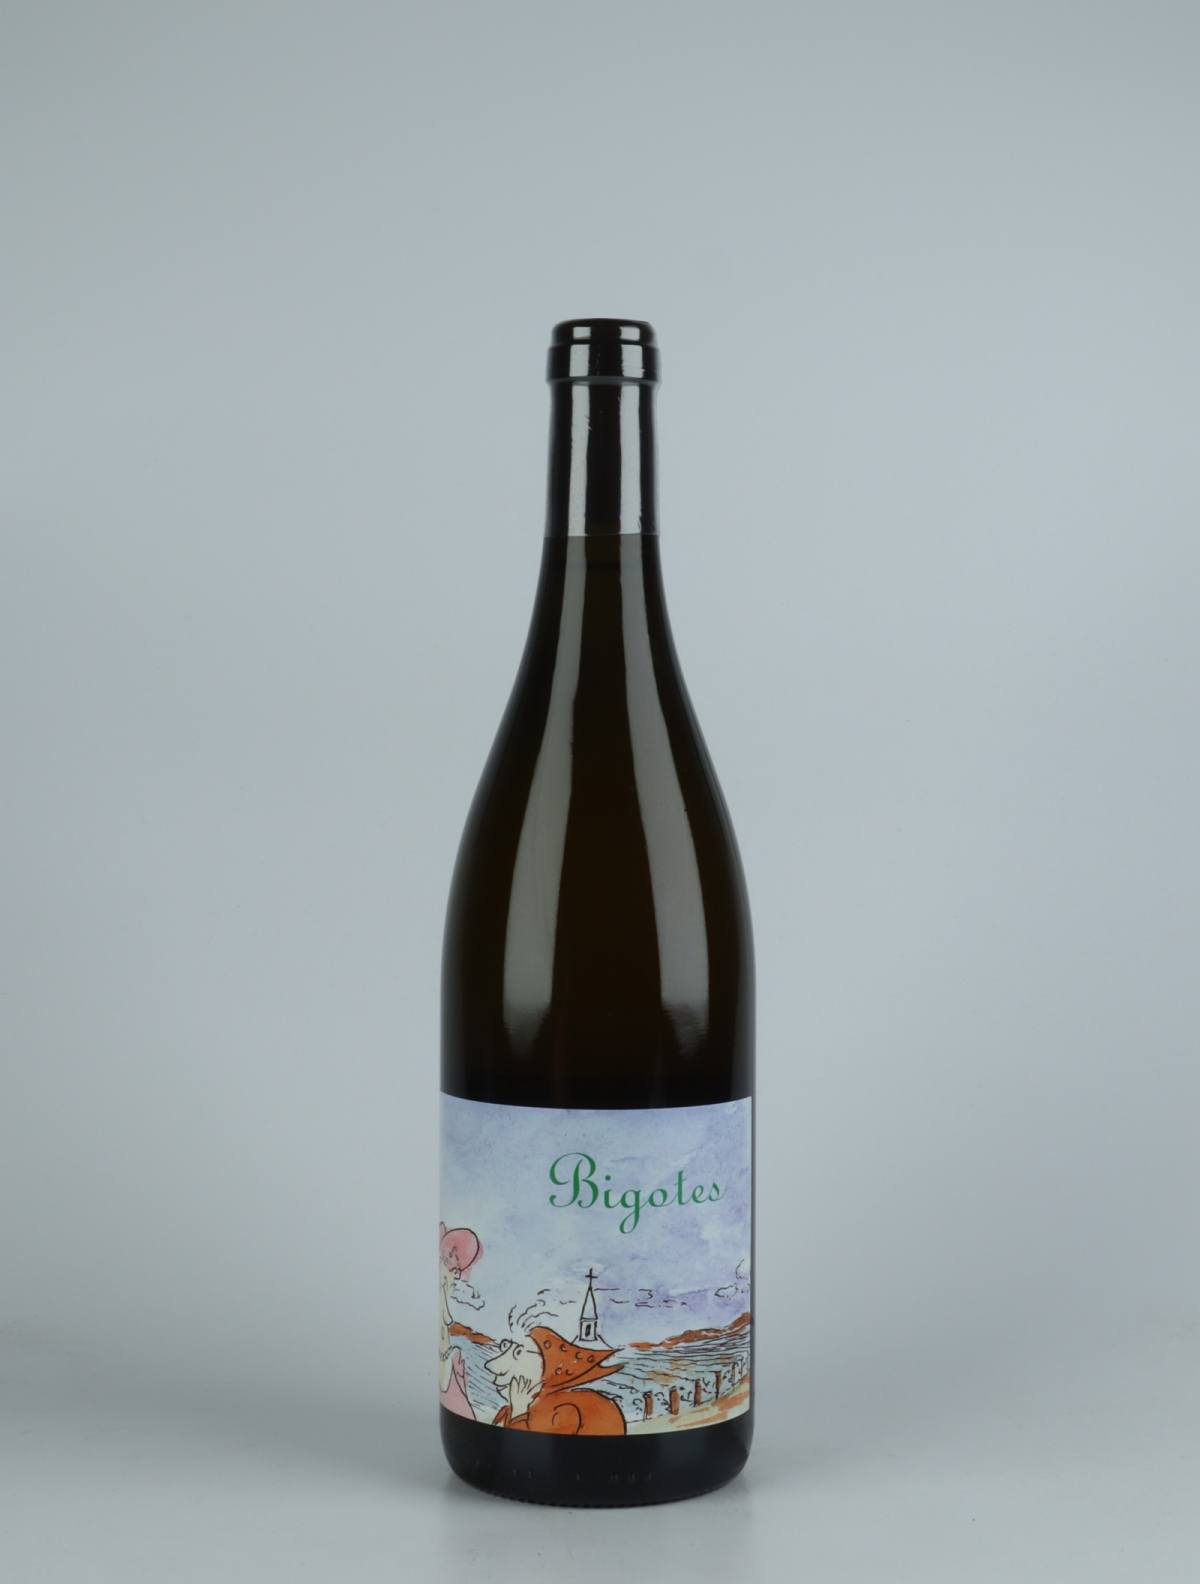 En flaske 2020 Bourgogne Blanc - Bigotes Hvidvin fra Frédéric Cossard, Bourgogne i Frankrig